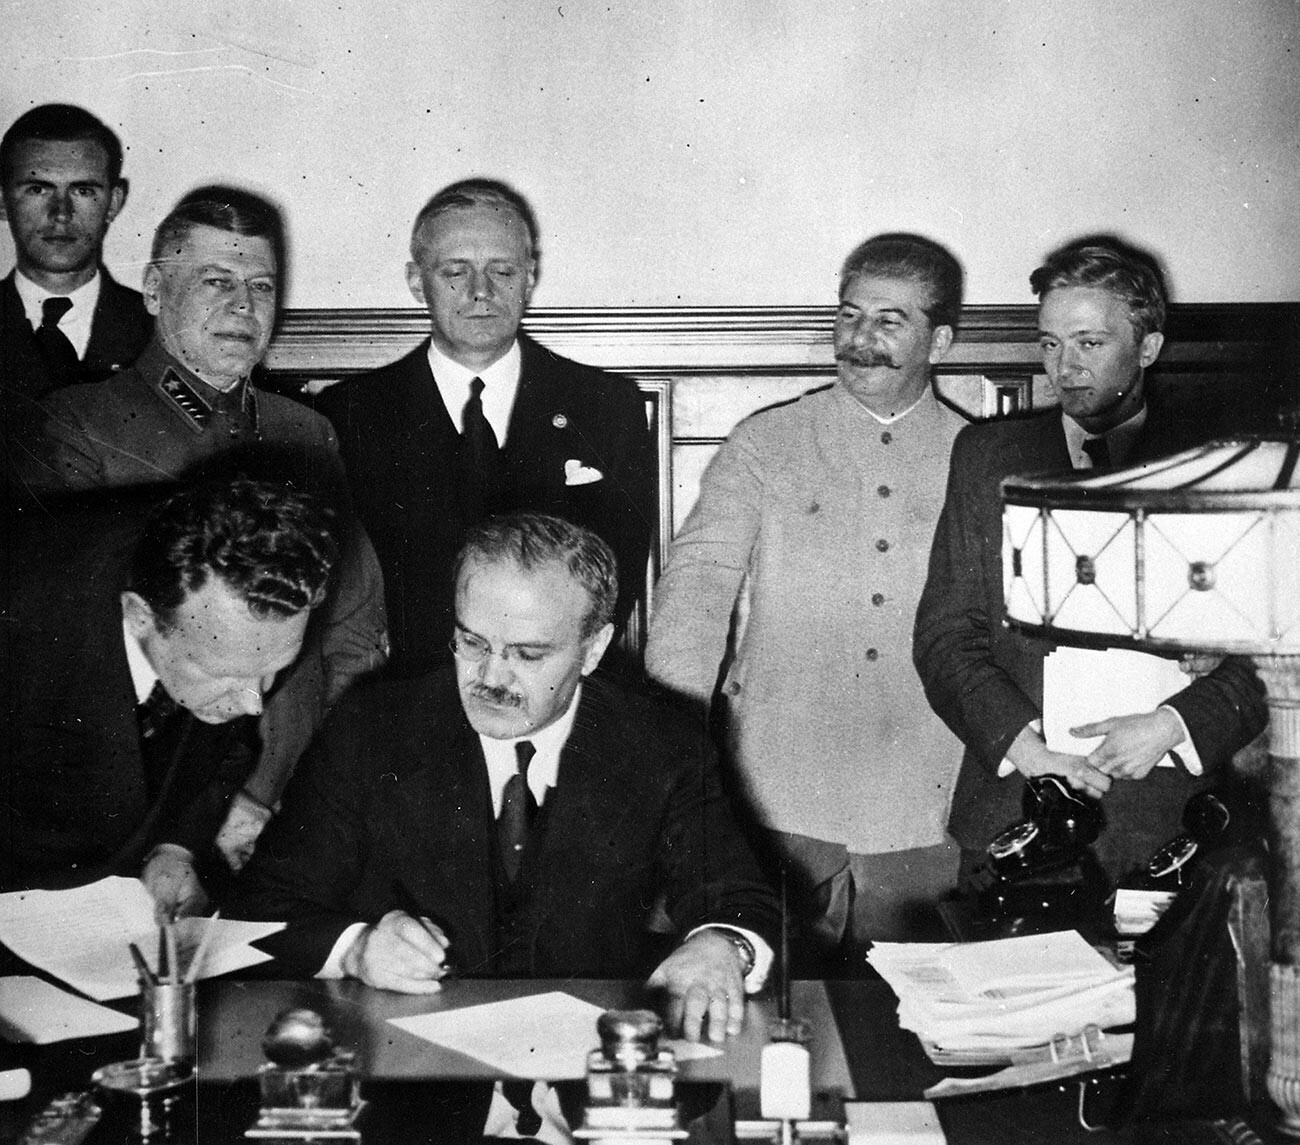 Der russische Außenminister Wjatscheslaw Molotow mit dem deutschen Minister von Ribbentrop und Josef Stalin.